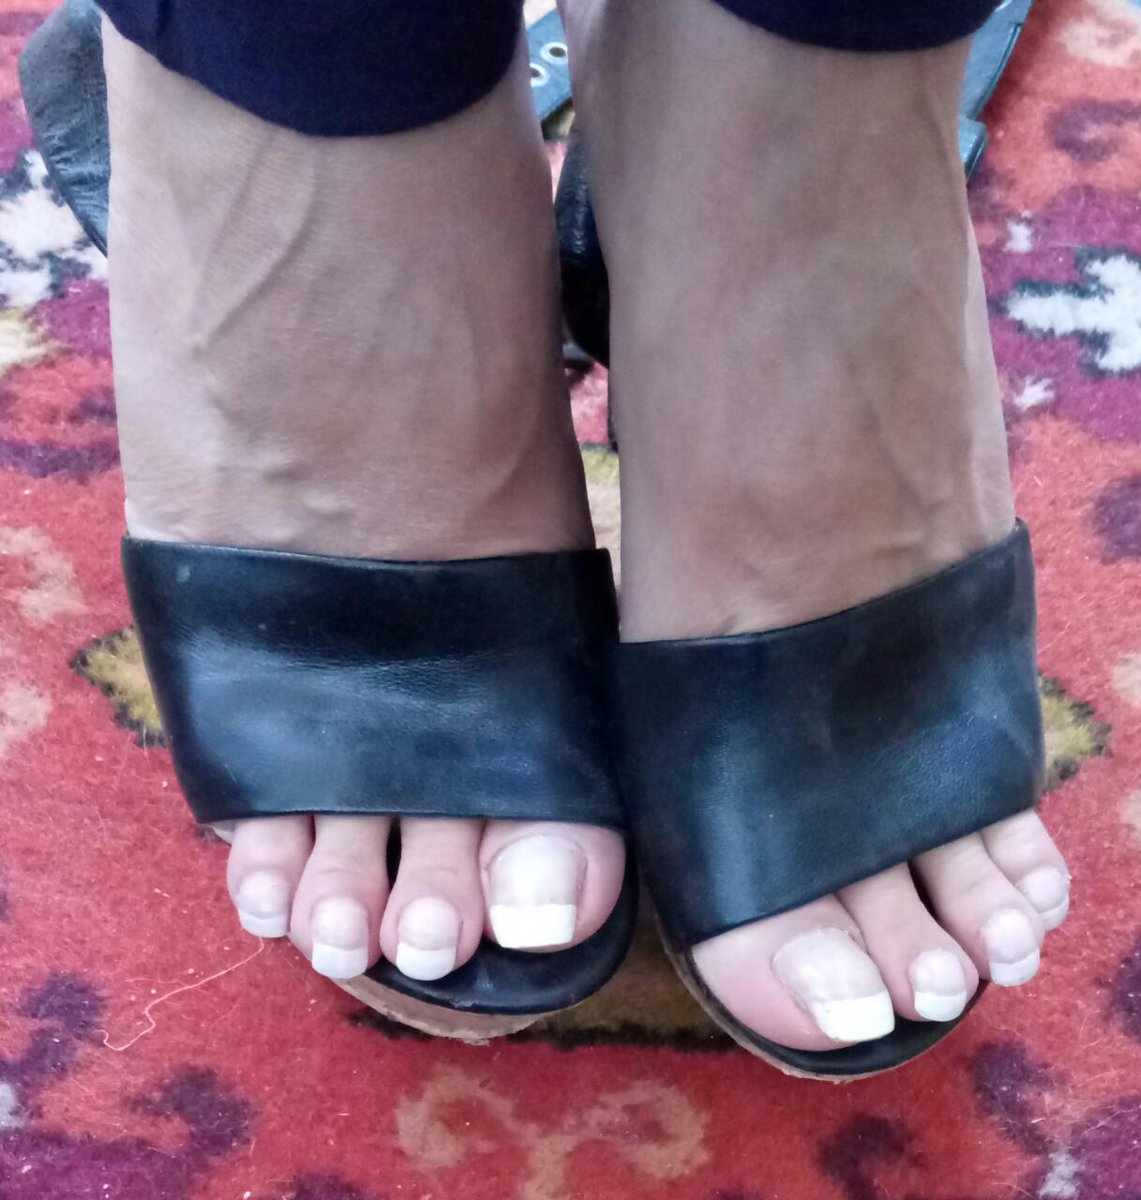 long toenails in high heels